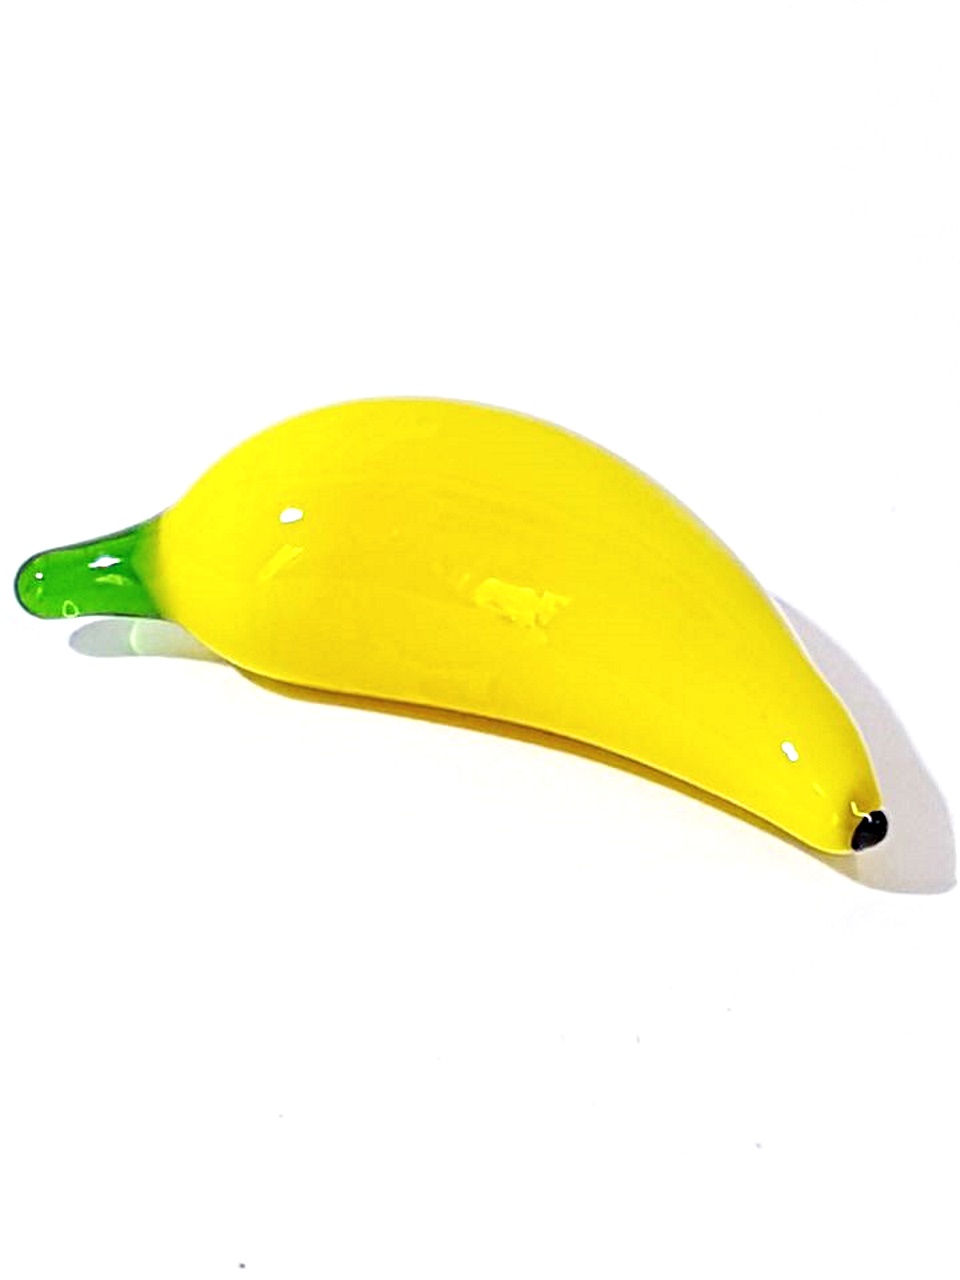 Banana per arredamento